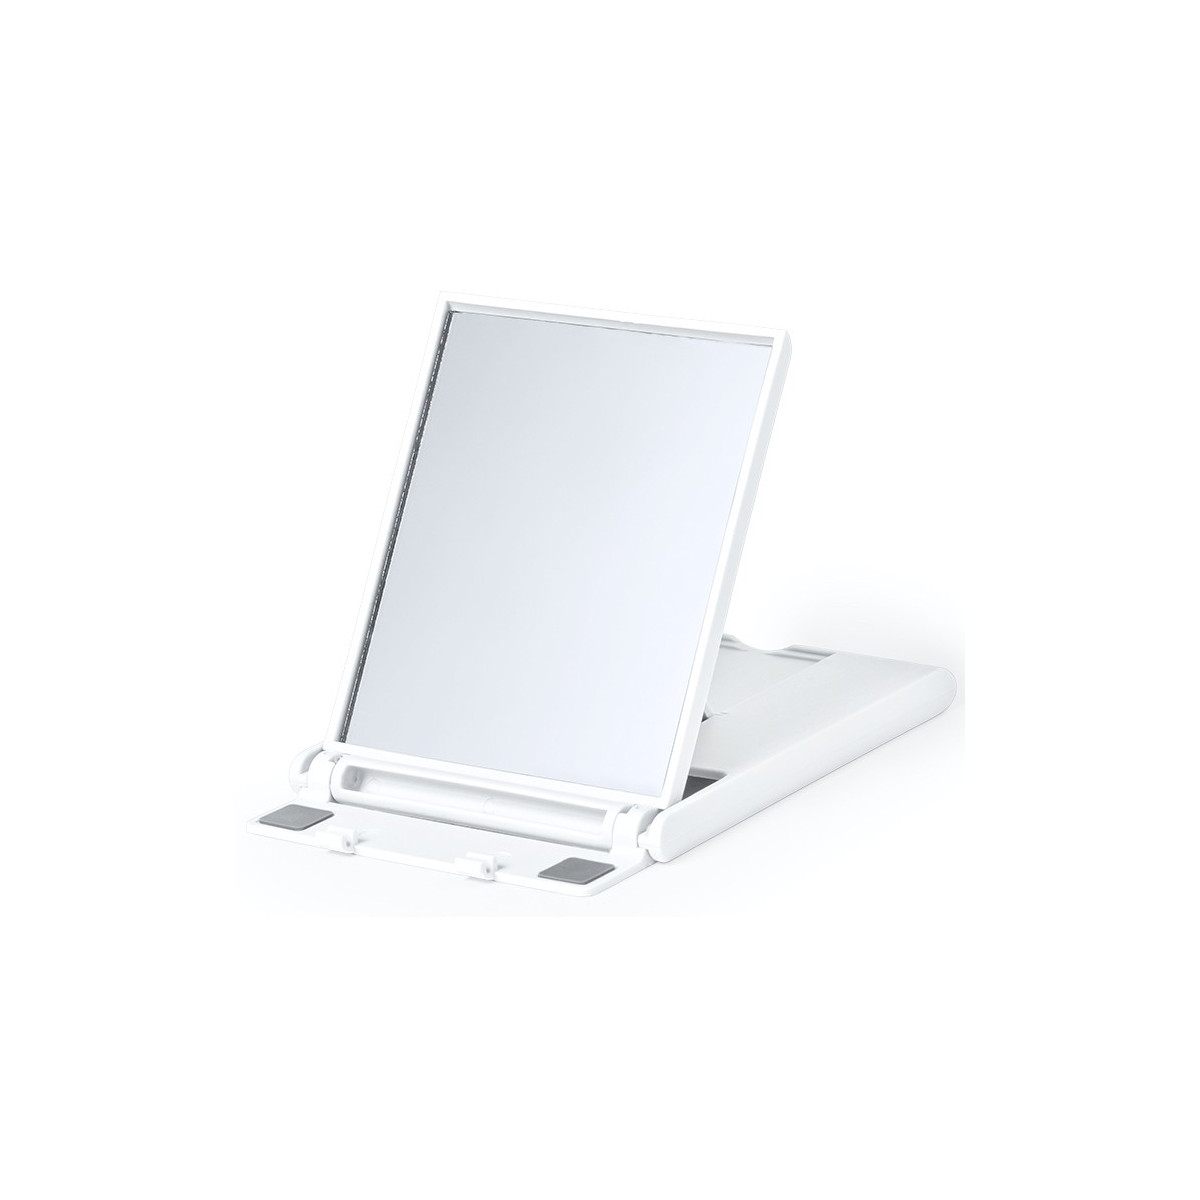 Support mobile et tablette pour table avec miroir